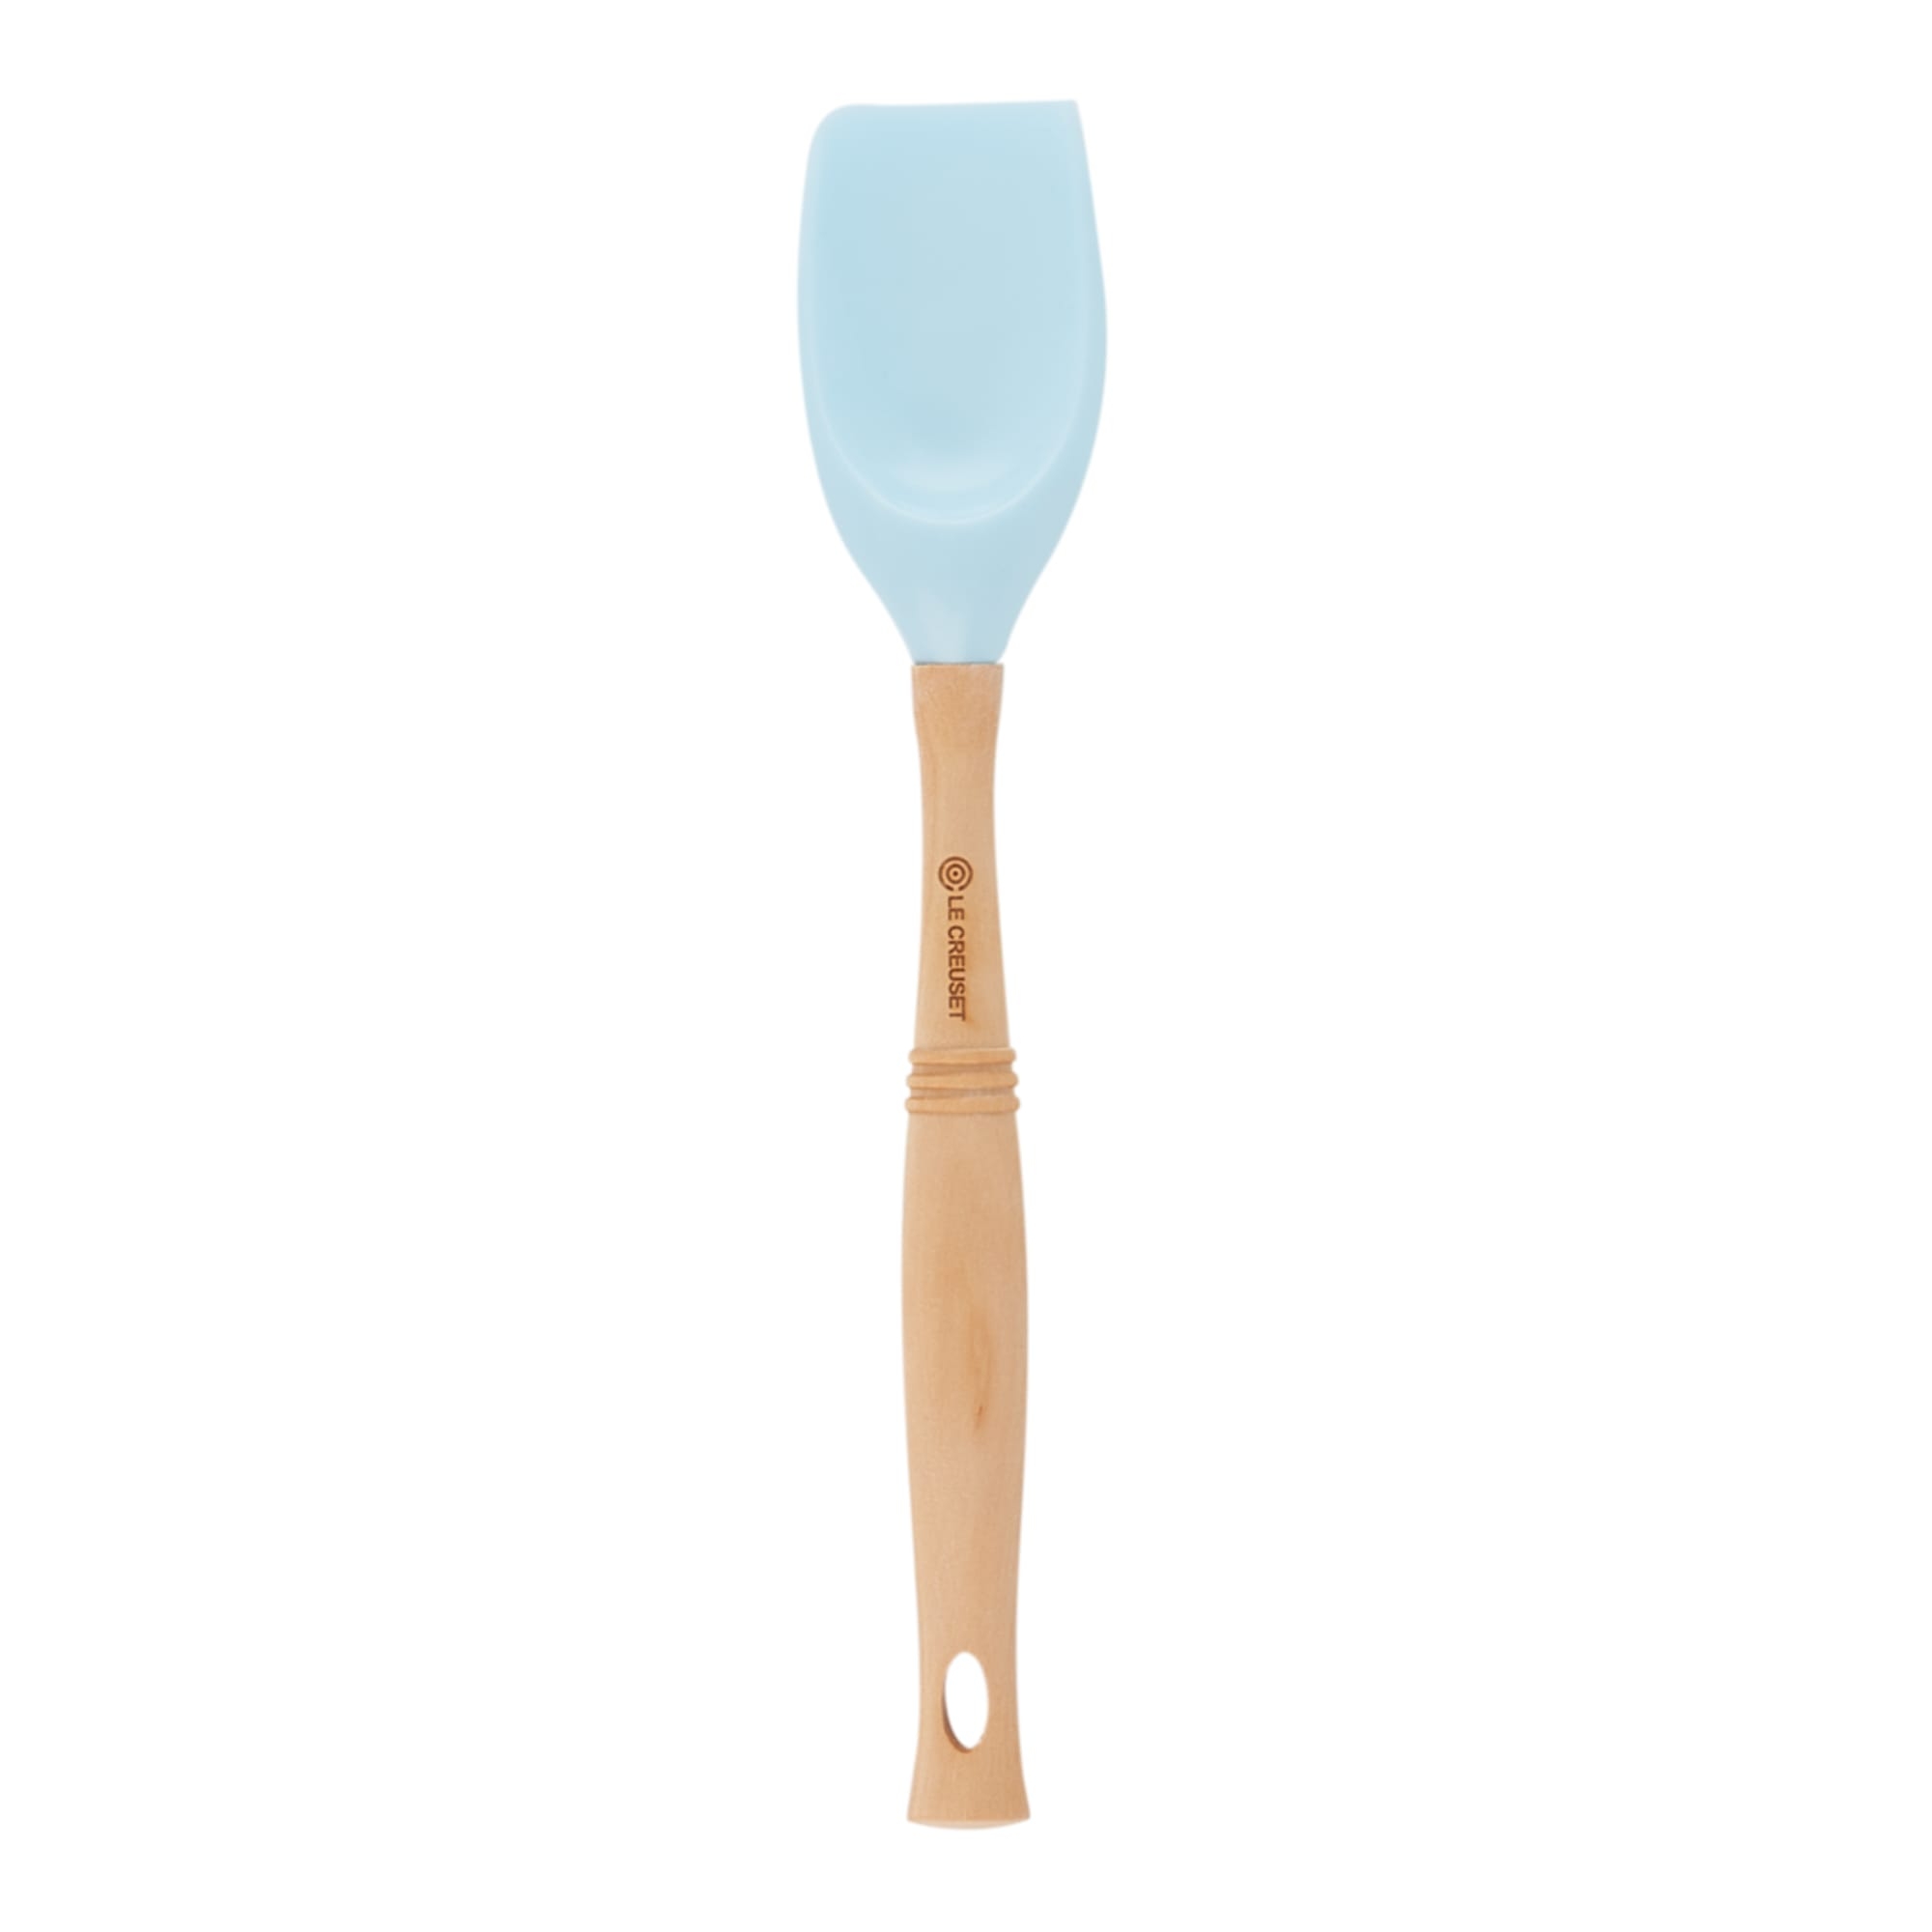 Le Creuset Professional Spoon Spatula Coastal Blue Image 2